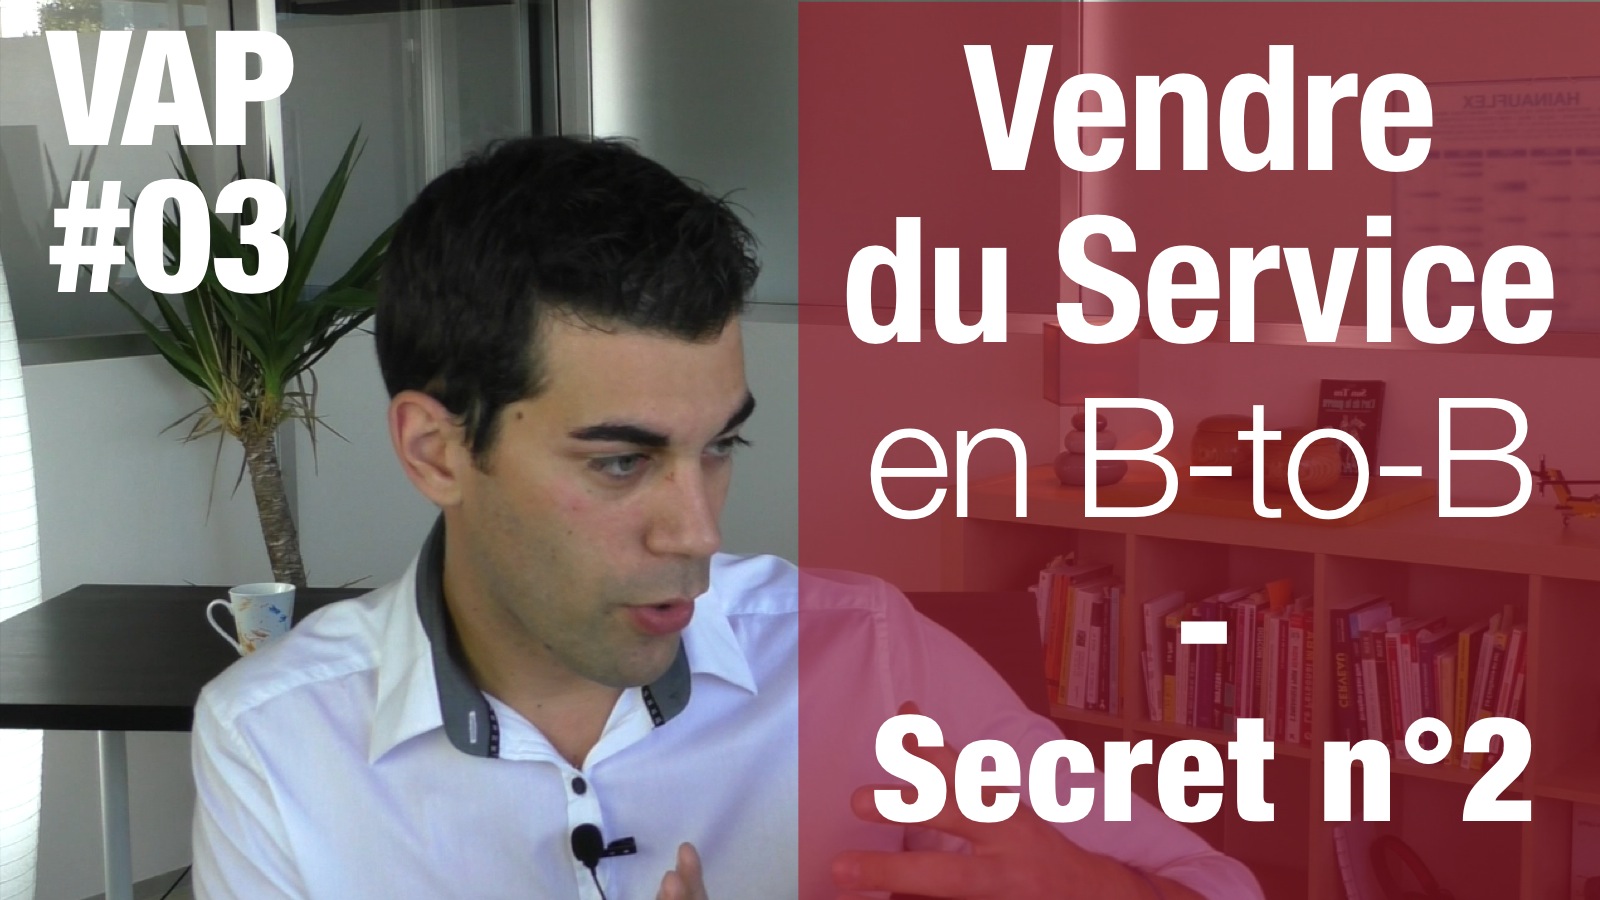 3 secrets pour vendre du service en BtoB - Secret n° 2